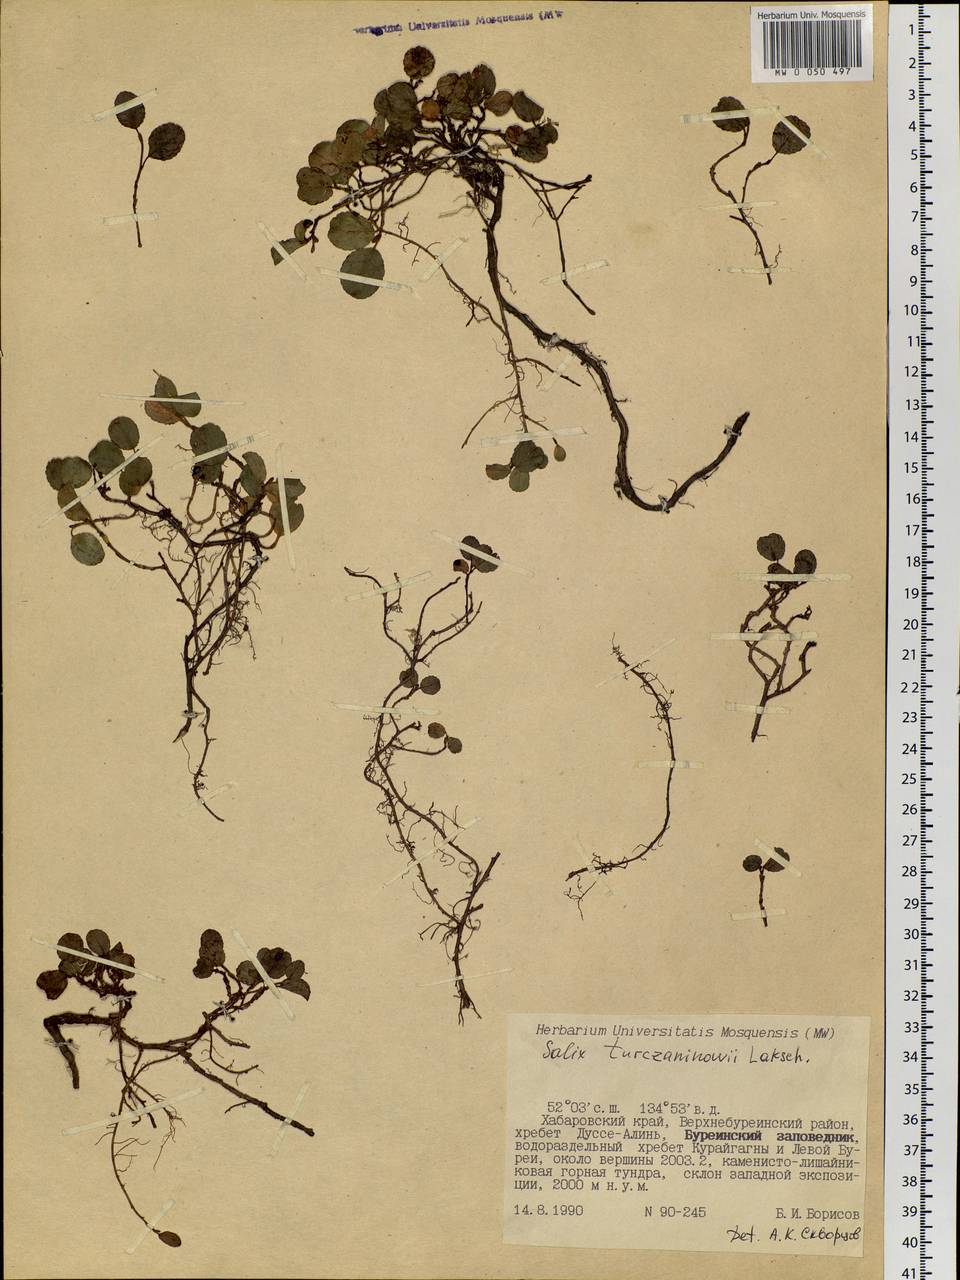 Salix turczaninowii Lacksch., Siberia, Russian Far East (S6) (Russia)